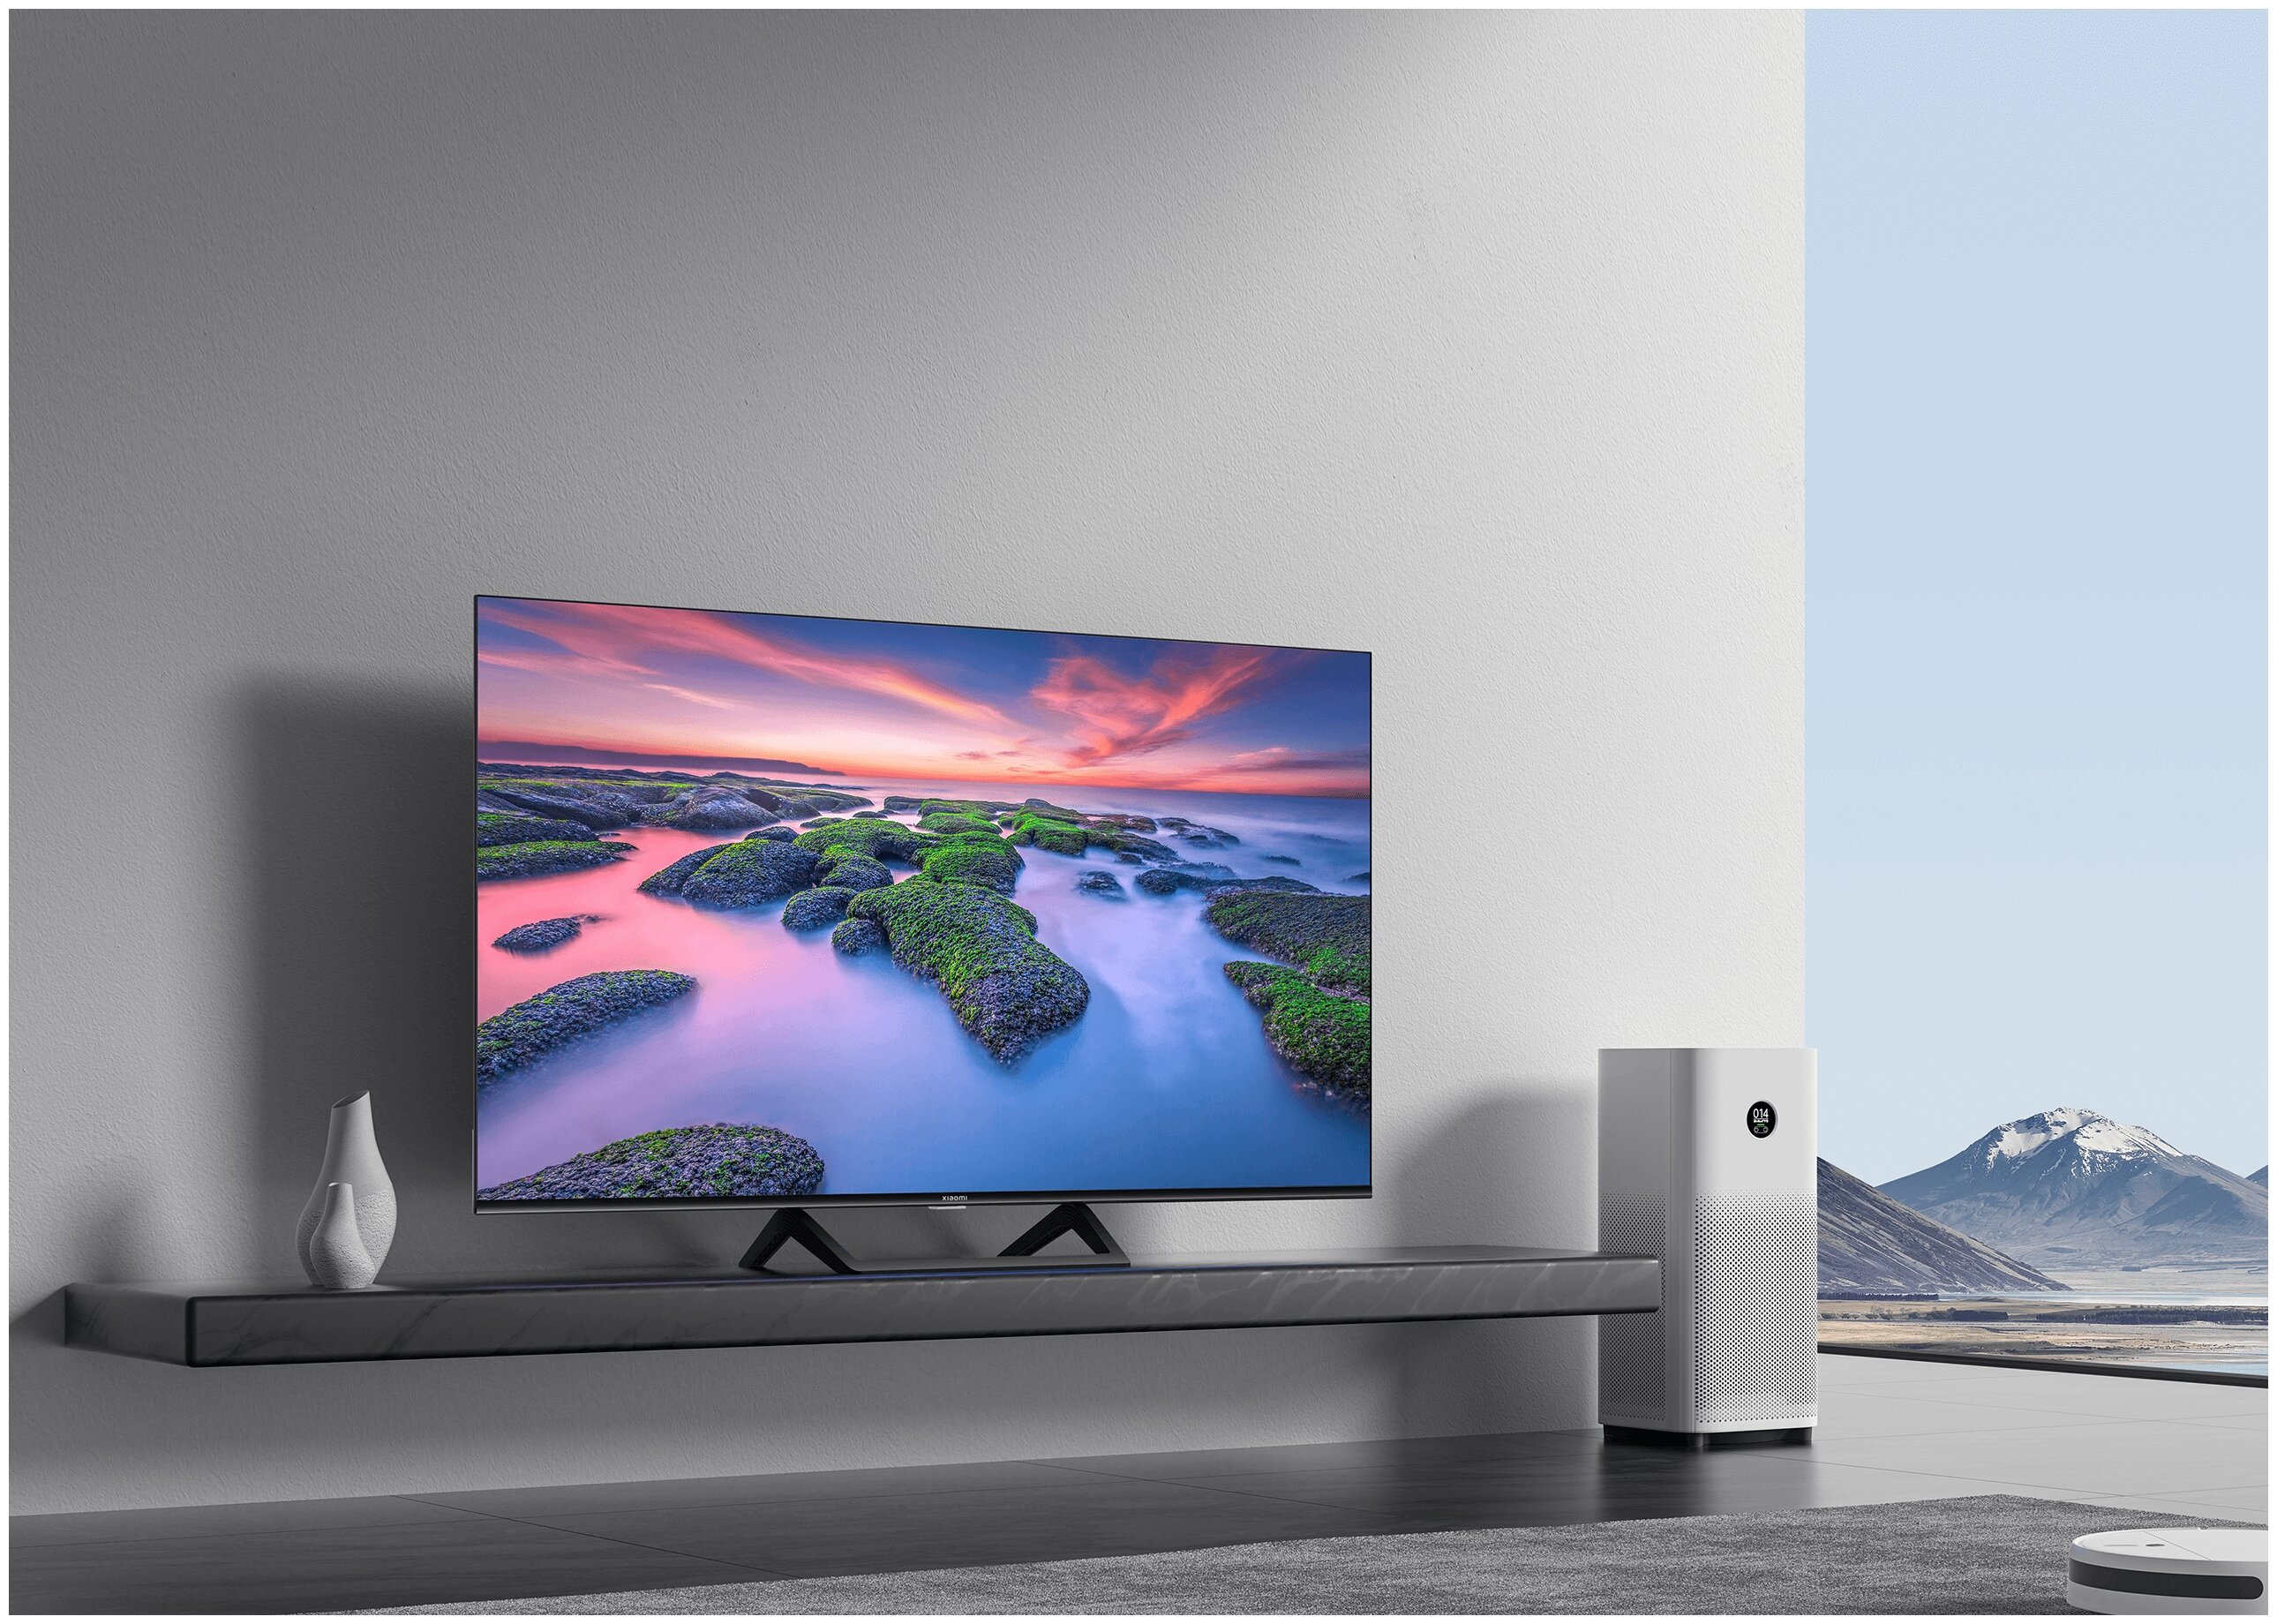 Телевизор xiaomi купить в спб. Телевизор Сяоми 43. Xiaomi mi TV p1 43 2021 led, HDR. Xiaomi mi TV p1 43 пульт. Телевизор Сяоми 43 дюйма.